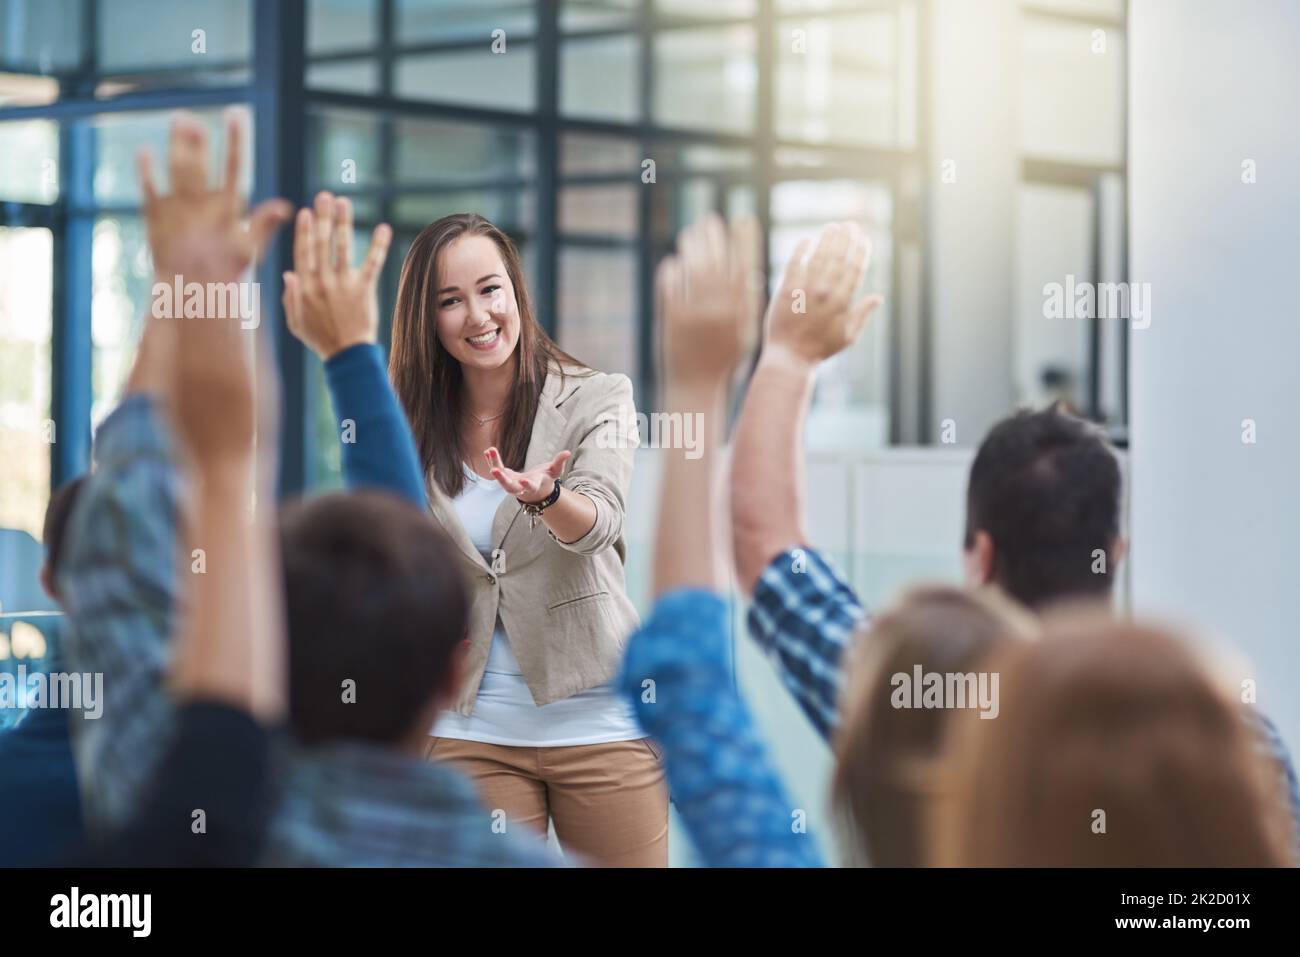 Le public a la réponse. Prise de vue d'un groupe de personnes levant la main dans un séminaire. Banque D'Images